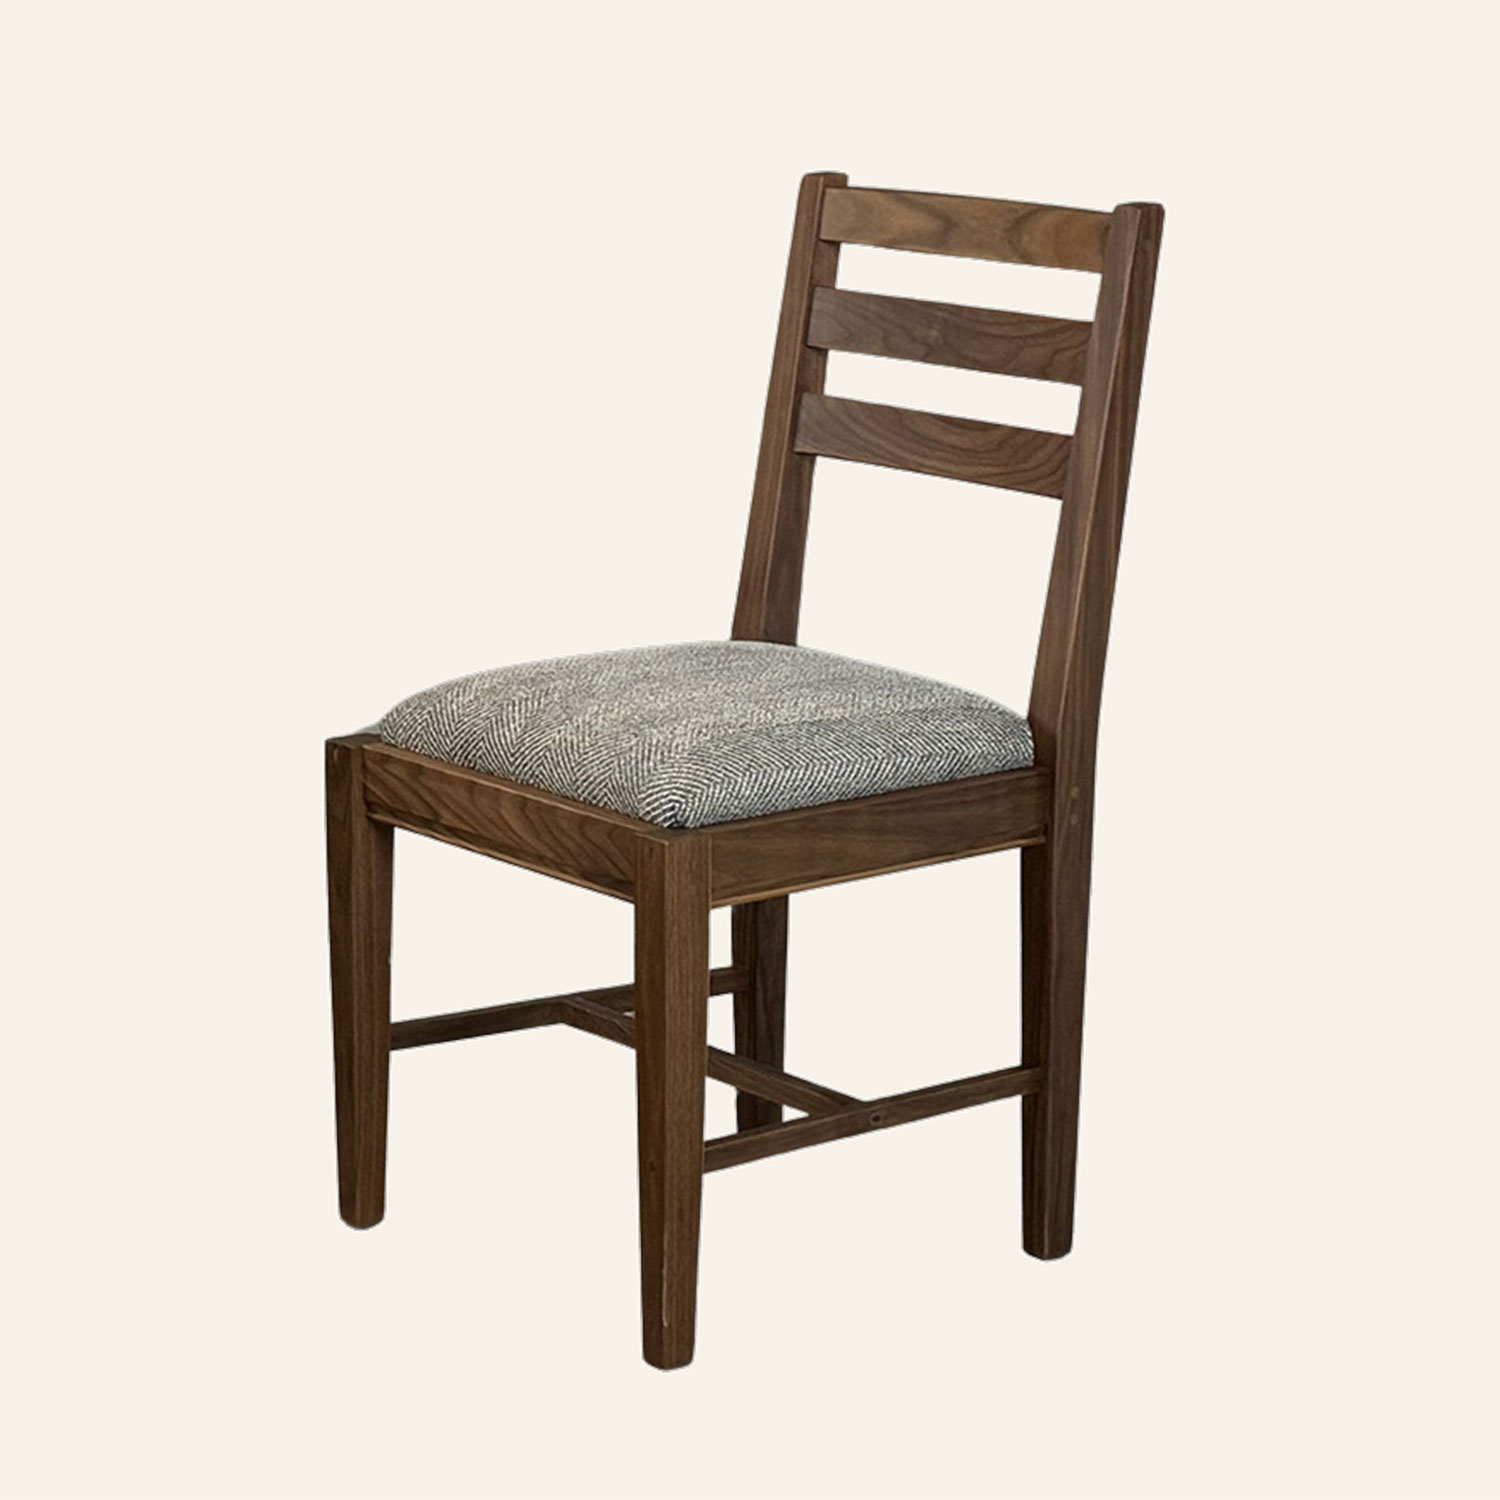 Strafford Dining Chair 262548